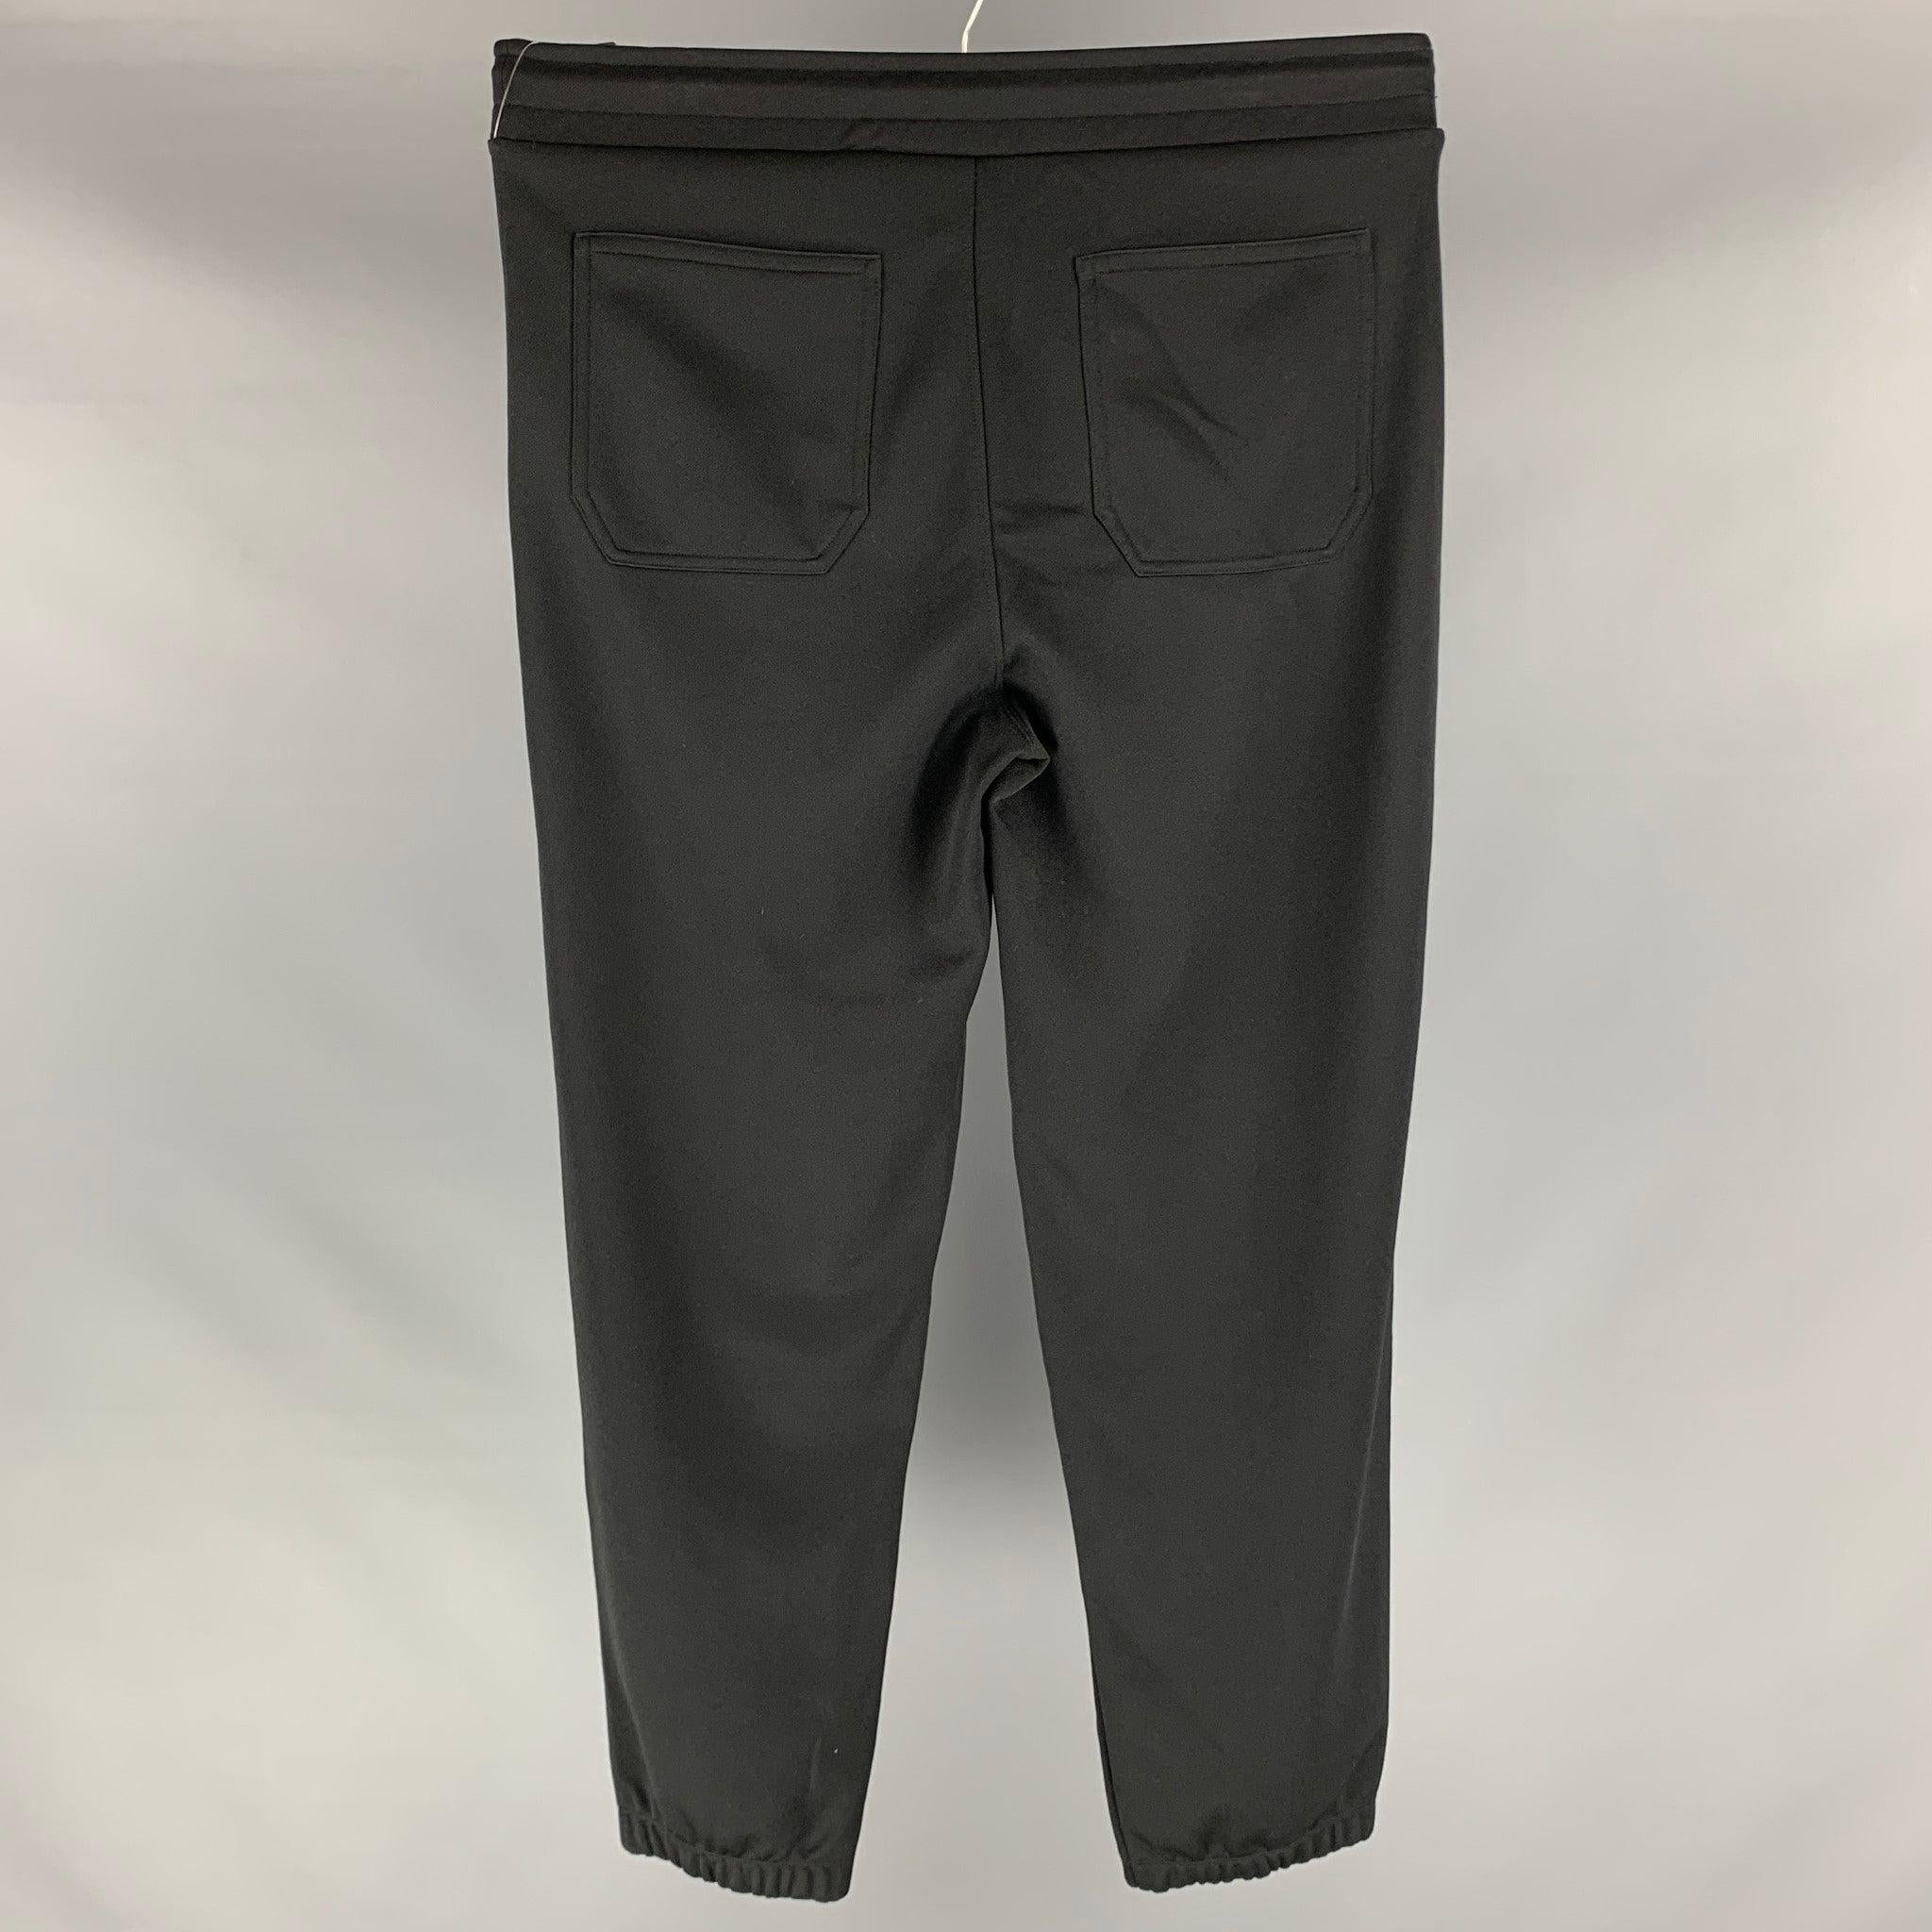 Le pantalon de survêtement GIVENCHY se compose d'une maille jersey en coton polyester noir, d'un logo, de poches zippées, d'une taille élastique et d'un cordon de serrage. Excellent état d'origine.  

Marqué :   L 

Mesures : 
  Taille : 33 pouces